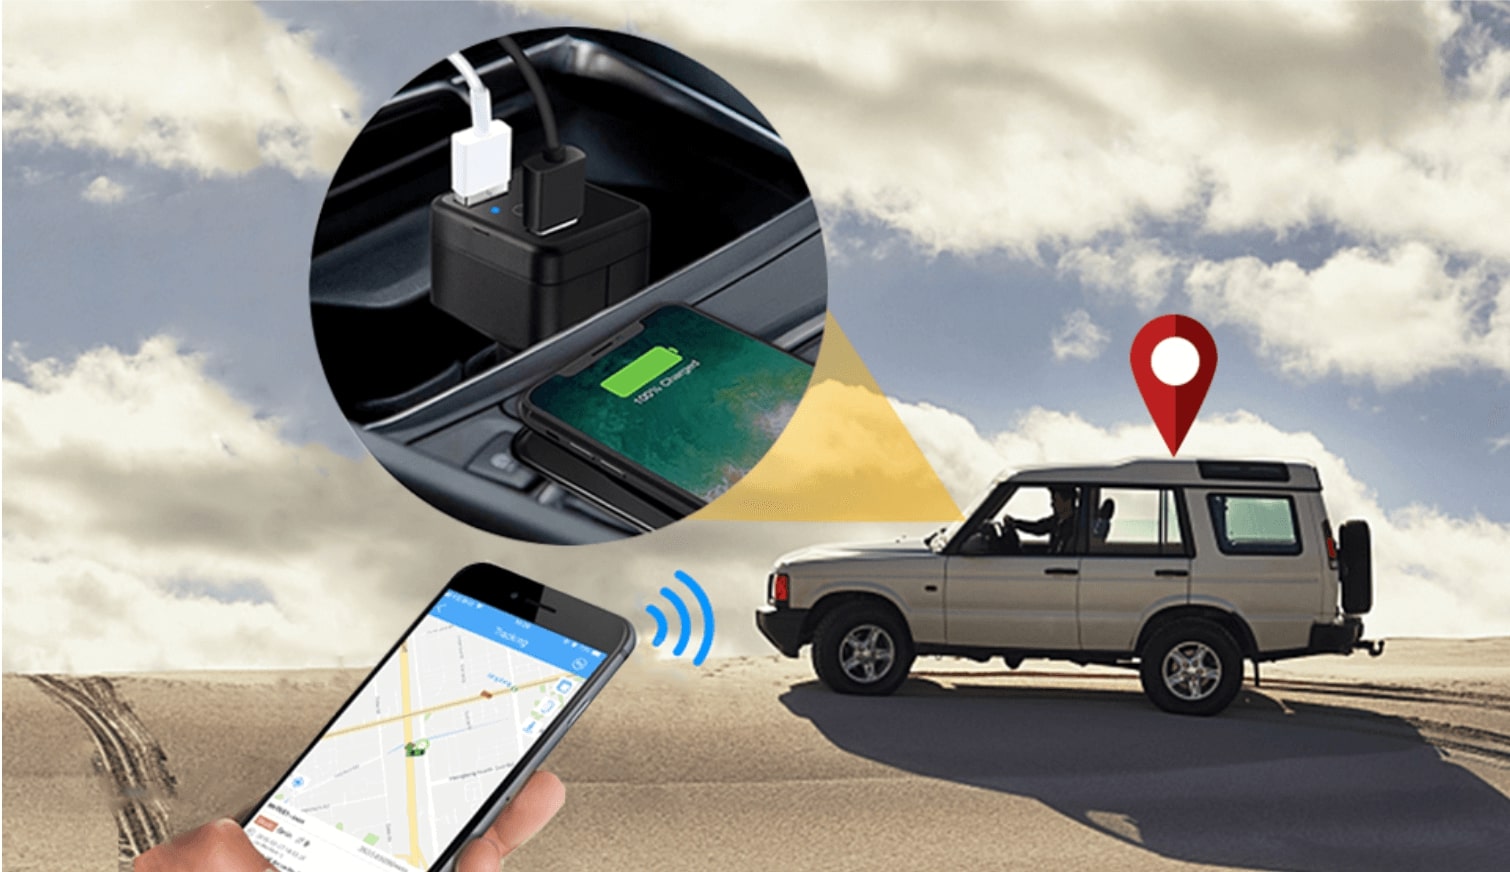 Hướng dẫn cách tắt định vị GPS trên ô tô đơn giản, nhanh nhất>